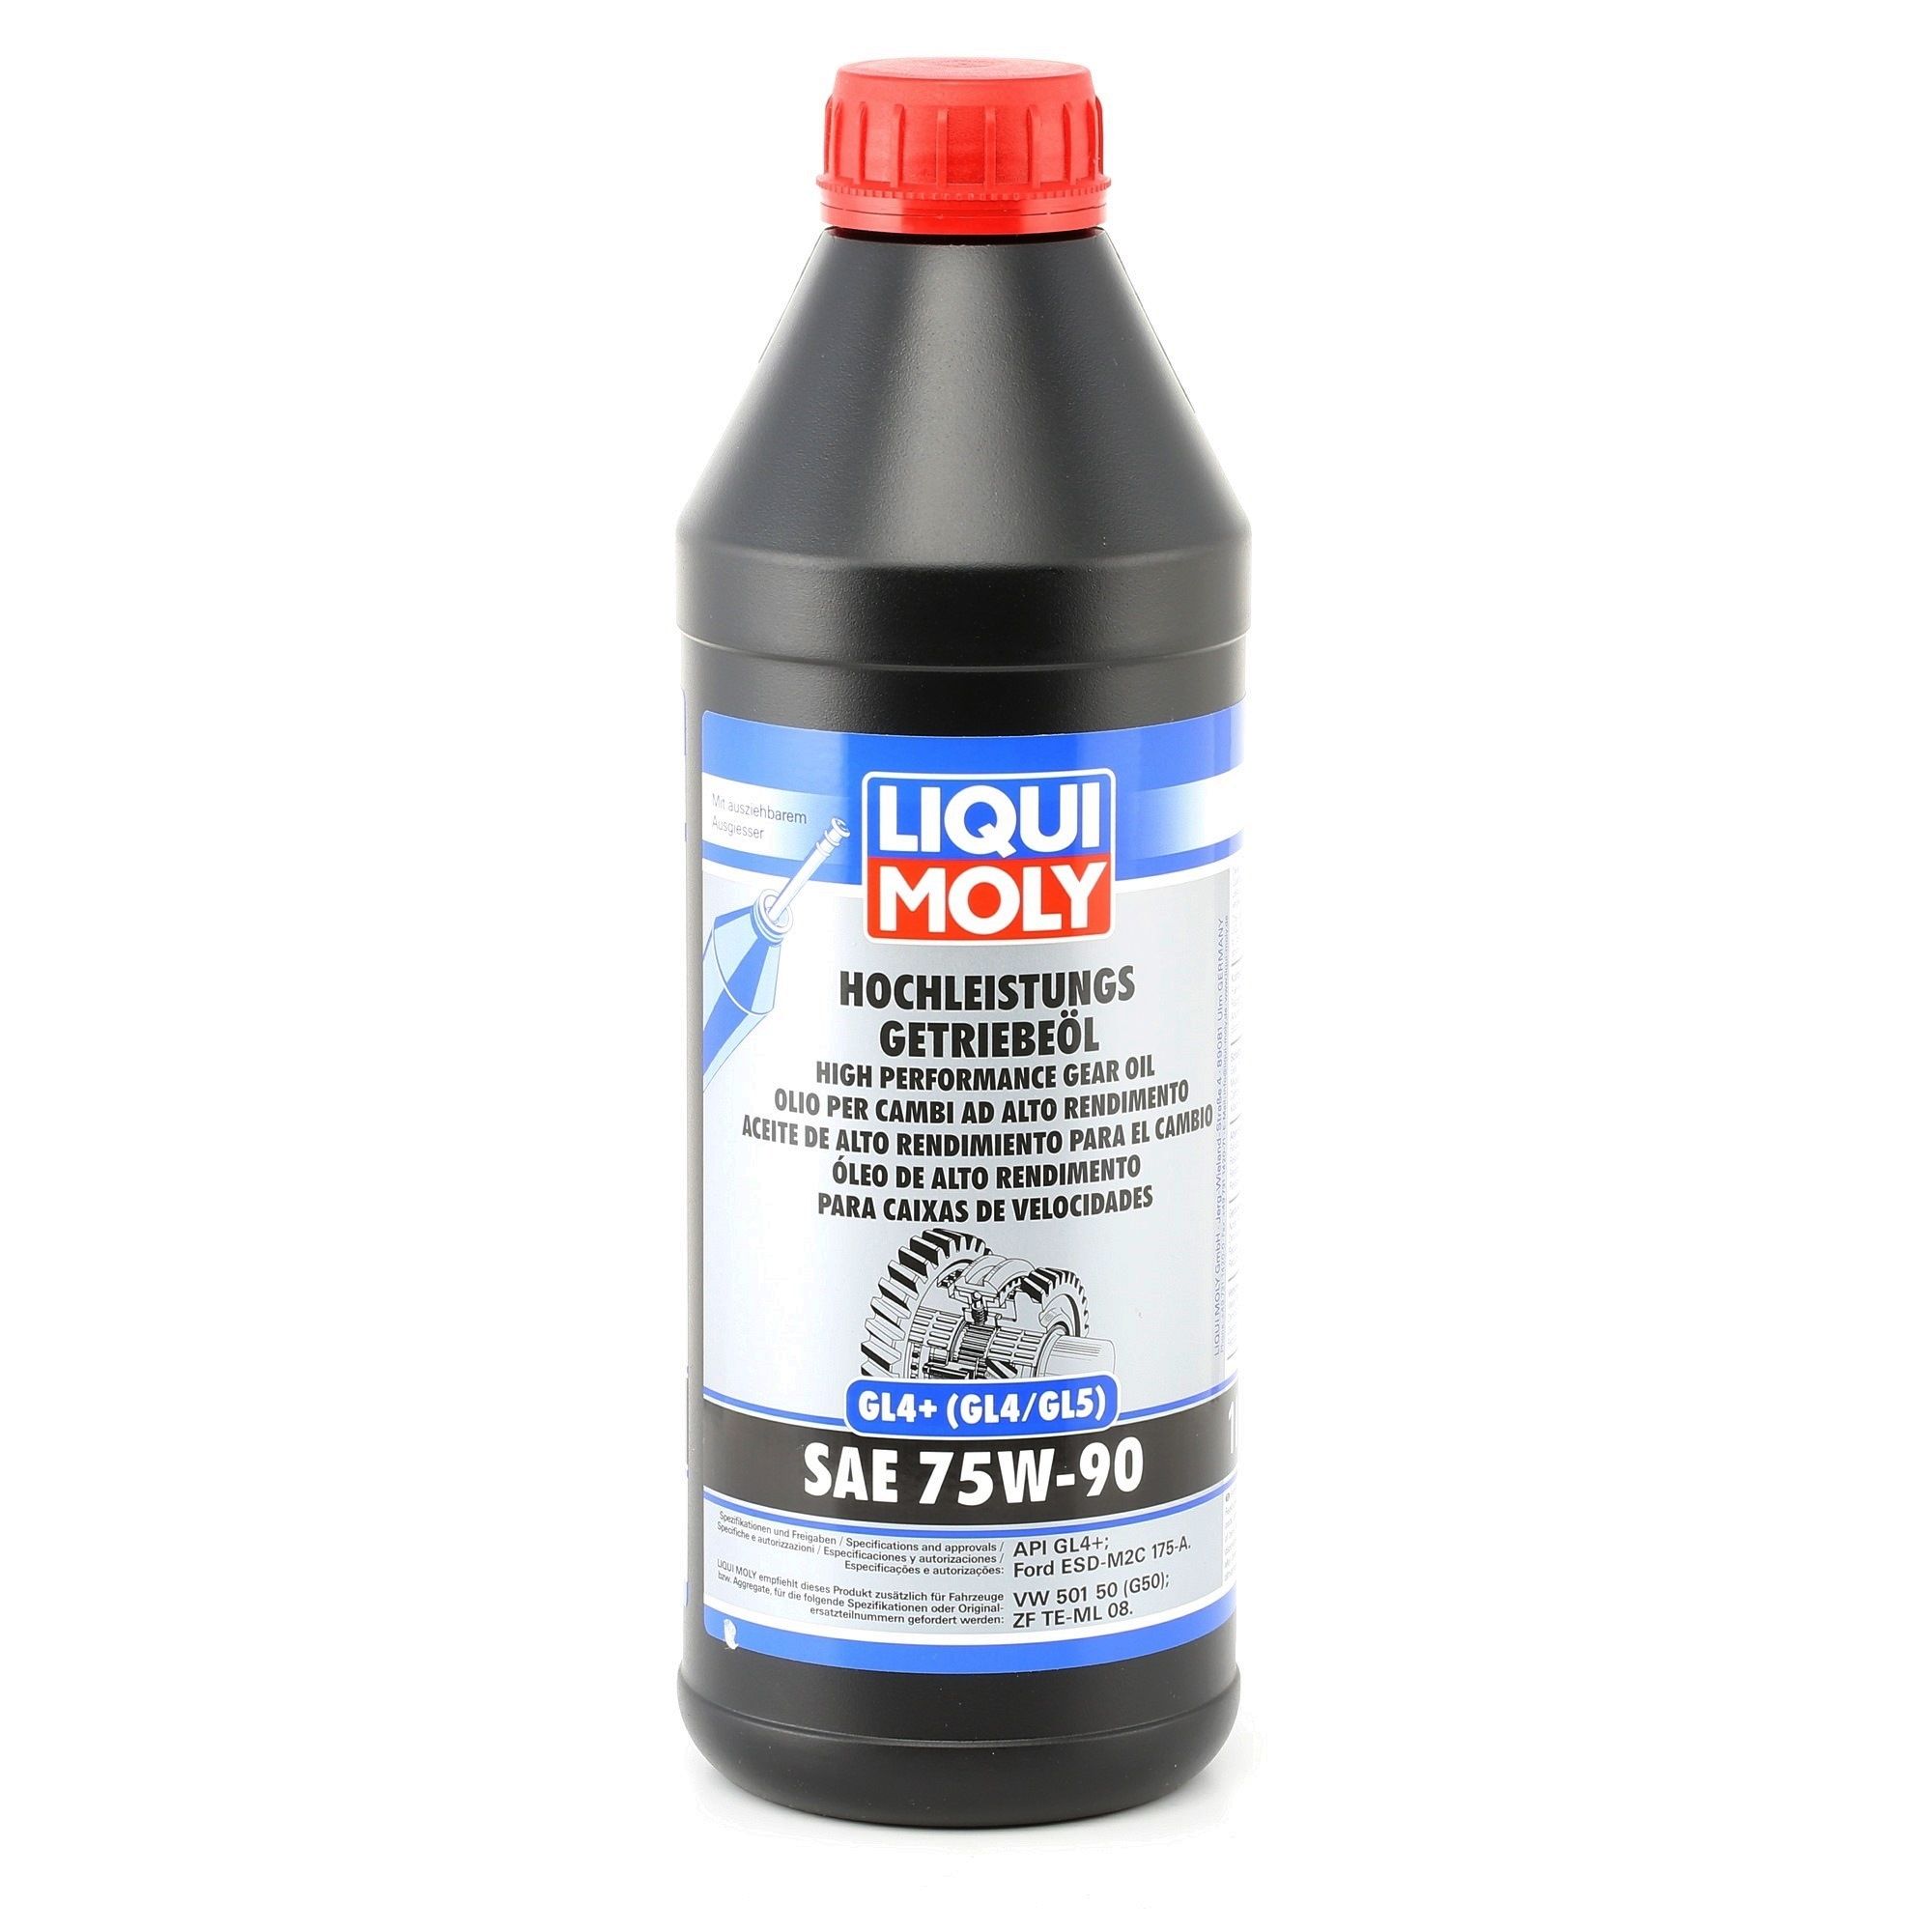 Scooterone Oli e Liquidi pezzi di ricambio: Olio cambio manuale LIQUI MOLY Hochleistungs GL4+ 4434